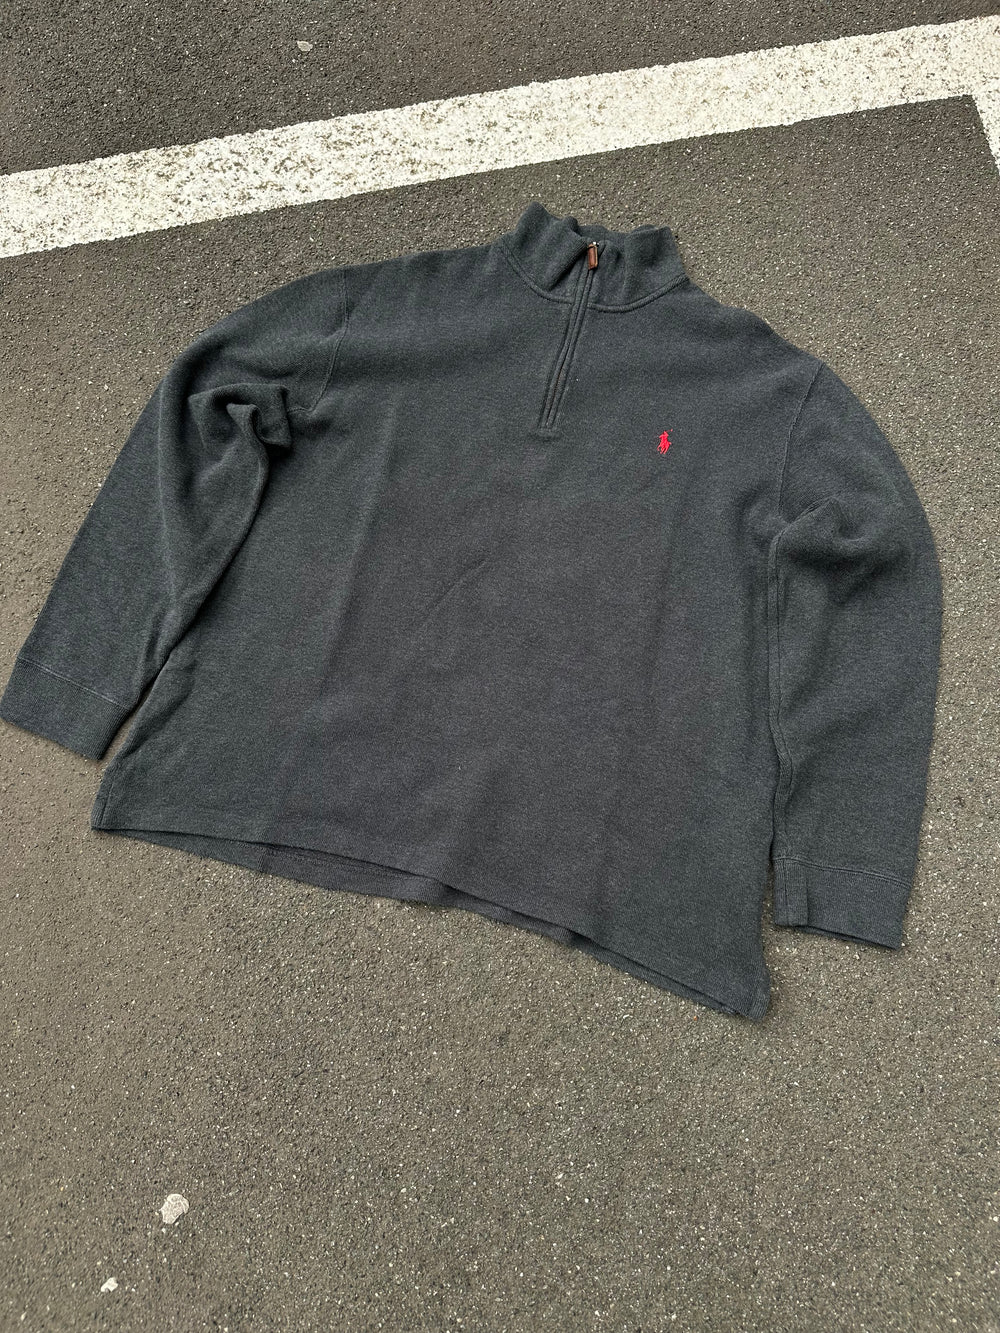 Vintage Polo Ralph Lauren Zip Sweater (XL)